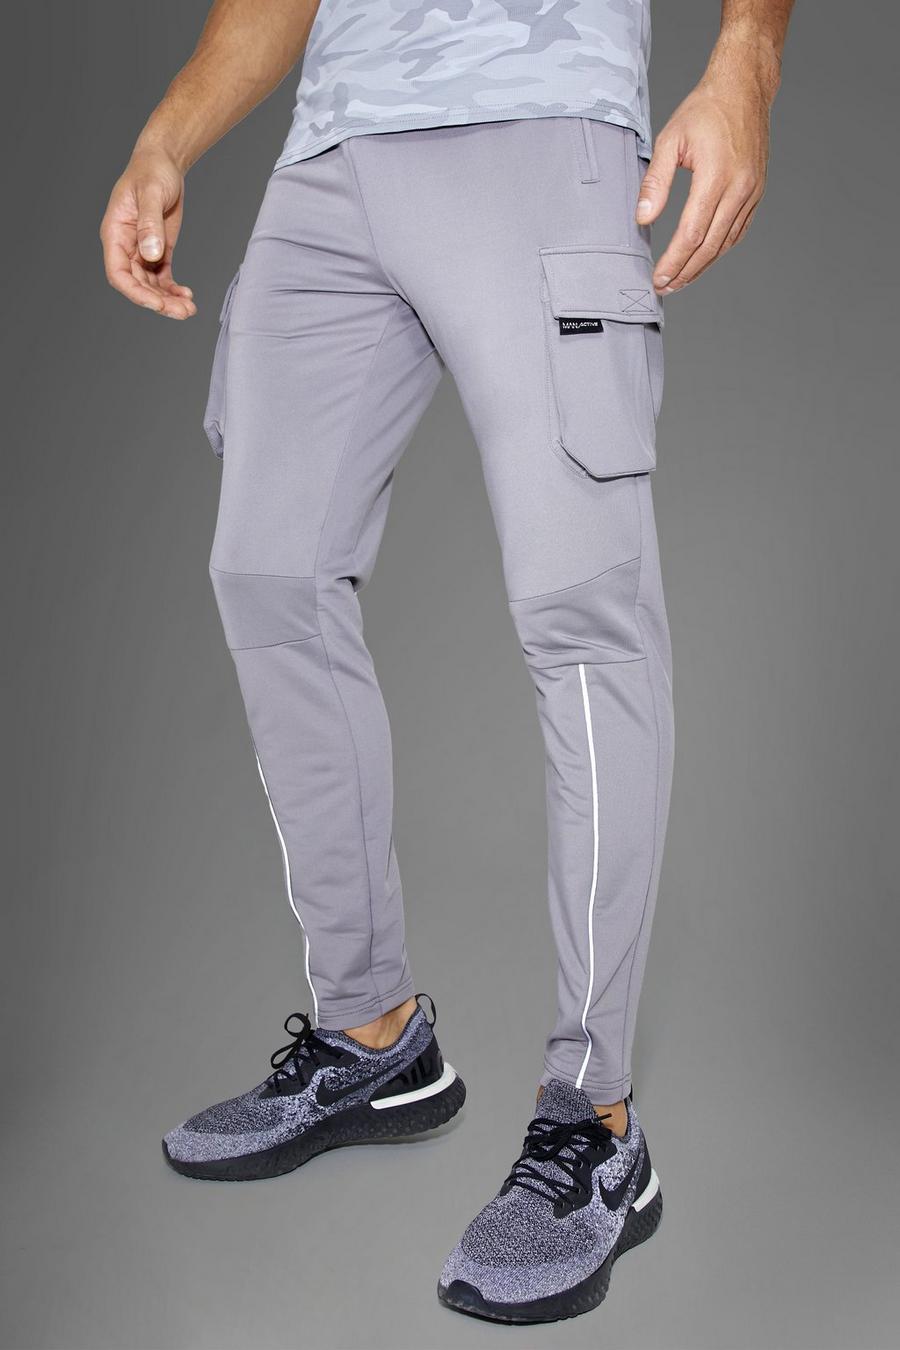 אפור gris מכנסי טרנינג דגמ'ח ספורטיביים לחדר הכושר עם כיתוב Man